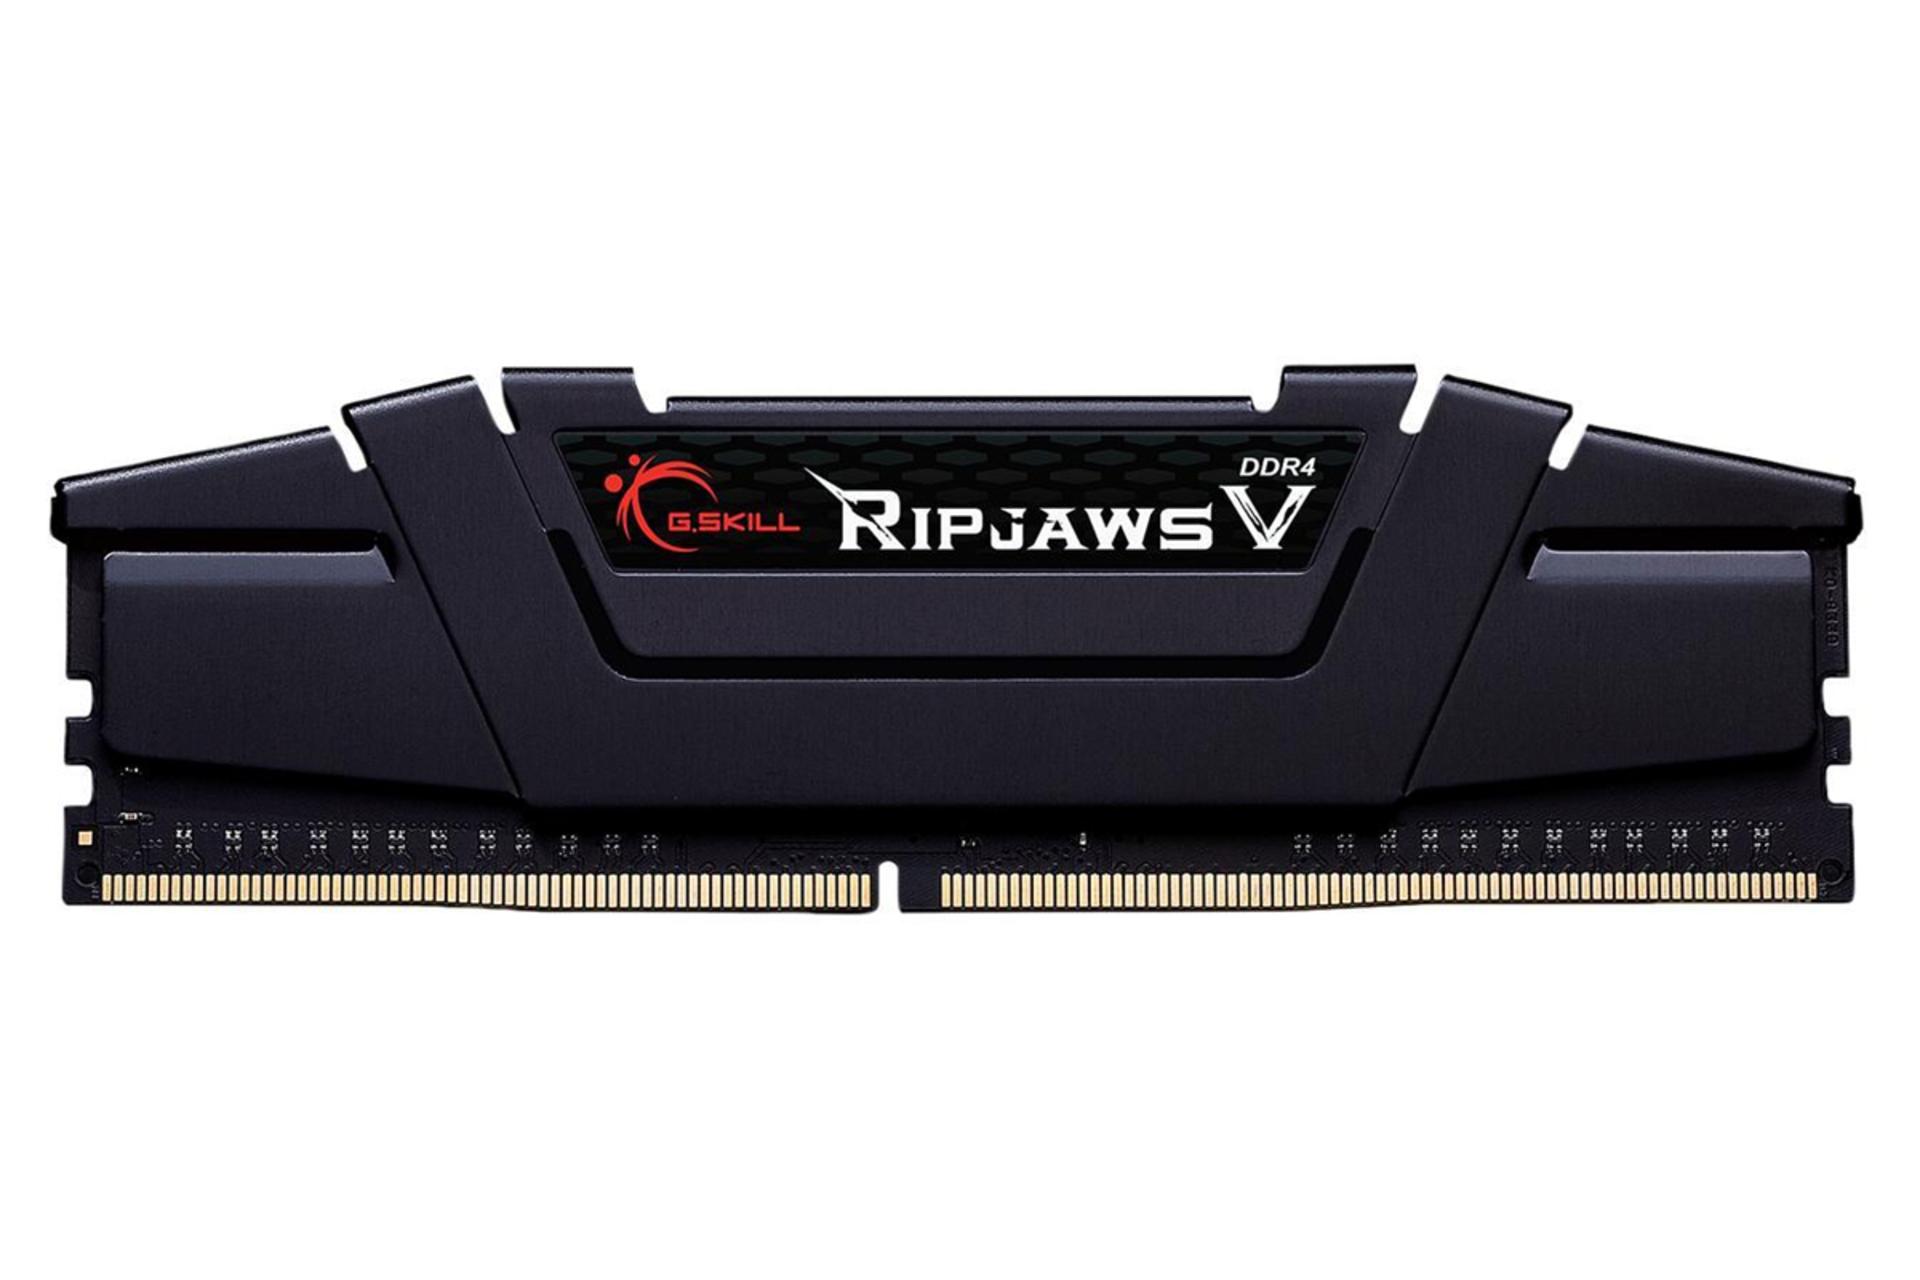  رم جی اسکیل Ripjaws V ظرفیت 16 گیگابایت از نوع DDR4-3200